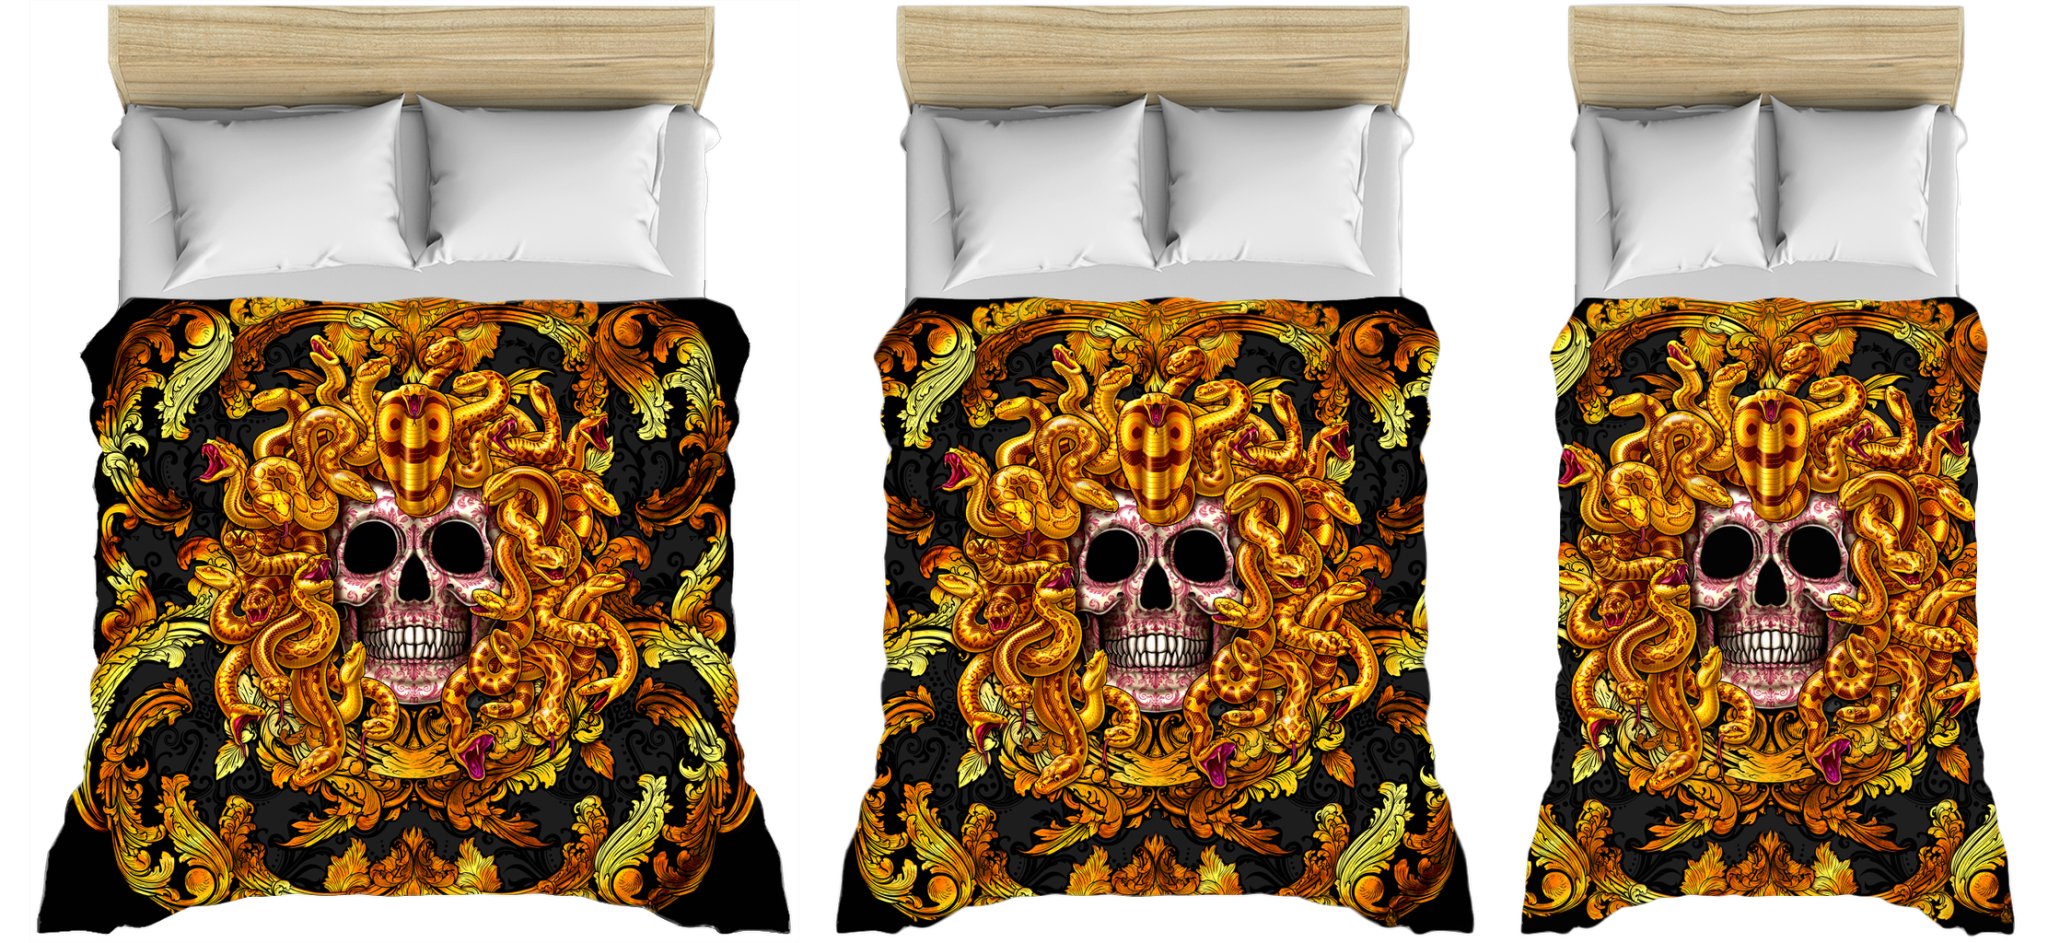 Gold Vintage Bedding Set, Medusa Comforter or Duvet, Victorian Skull Bed Cover, Bedroom Decor, King, Queen & Twin Size - Gold, 2 Faces - Abysm Internal